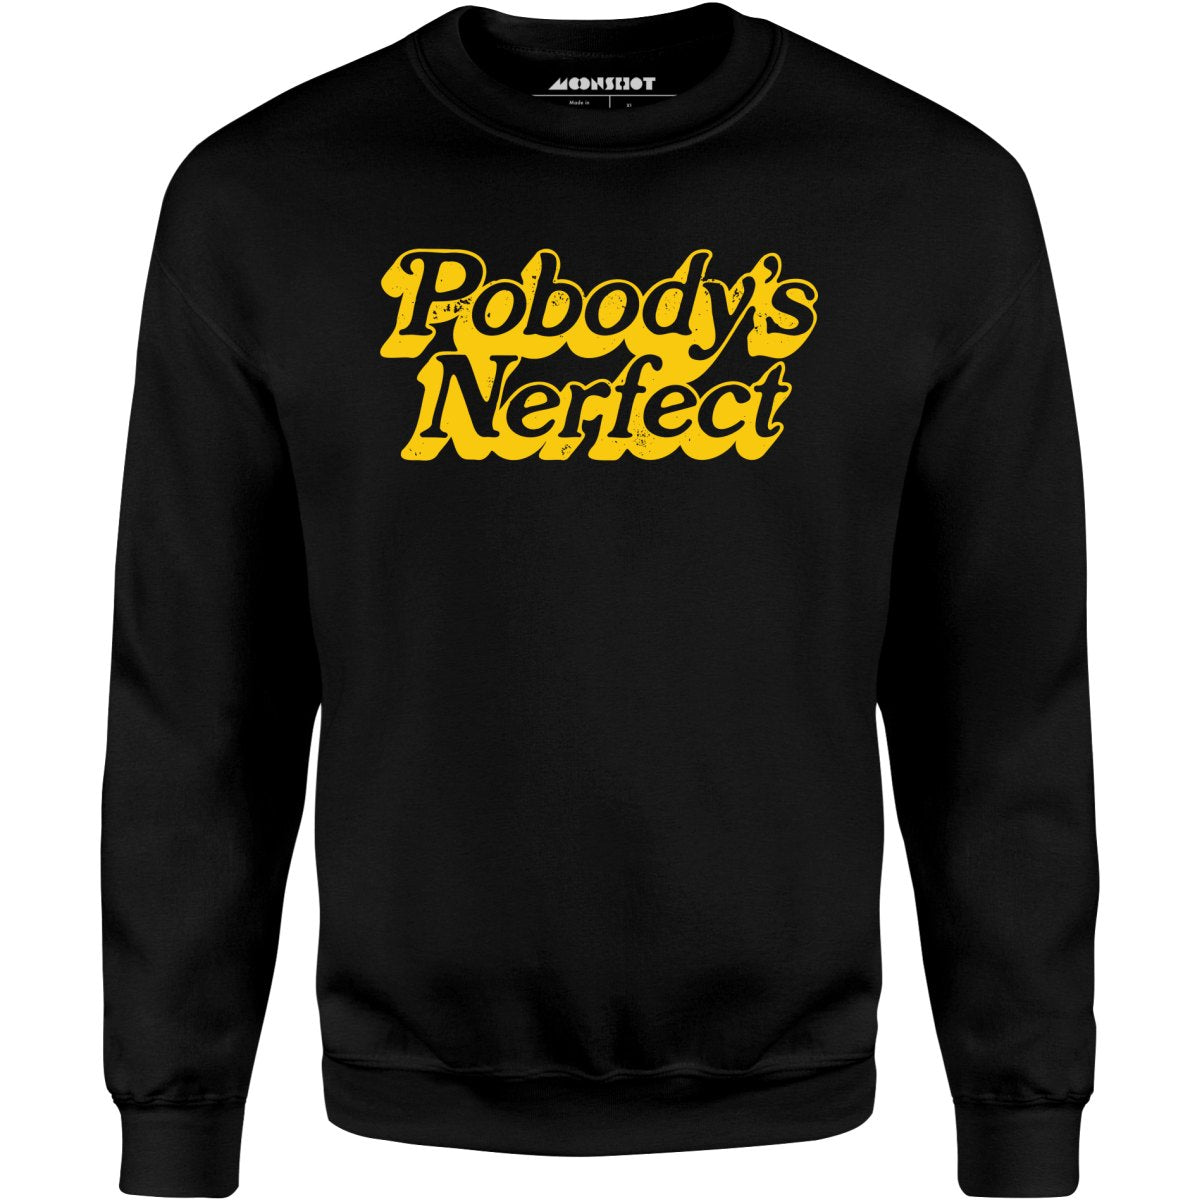 Pobody's Nerfect - Unisex Sweatshirt